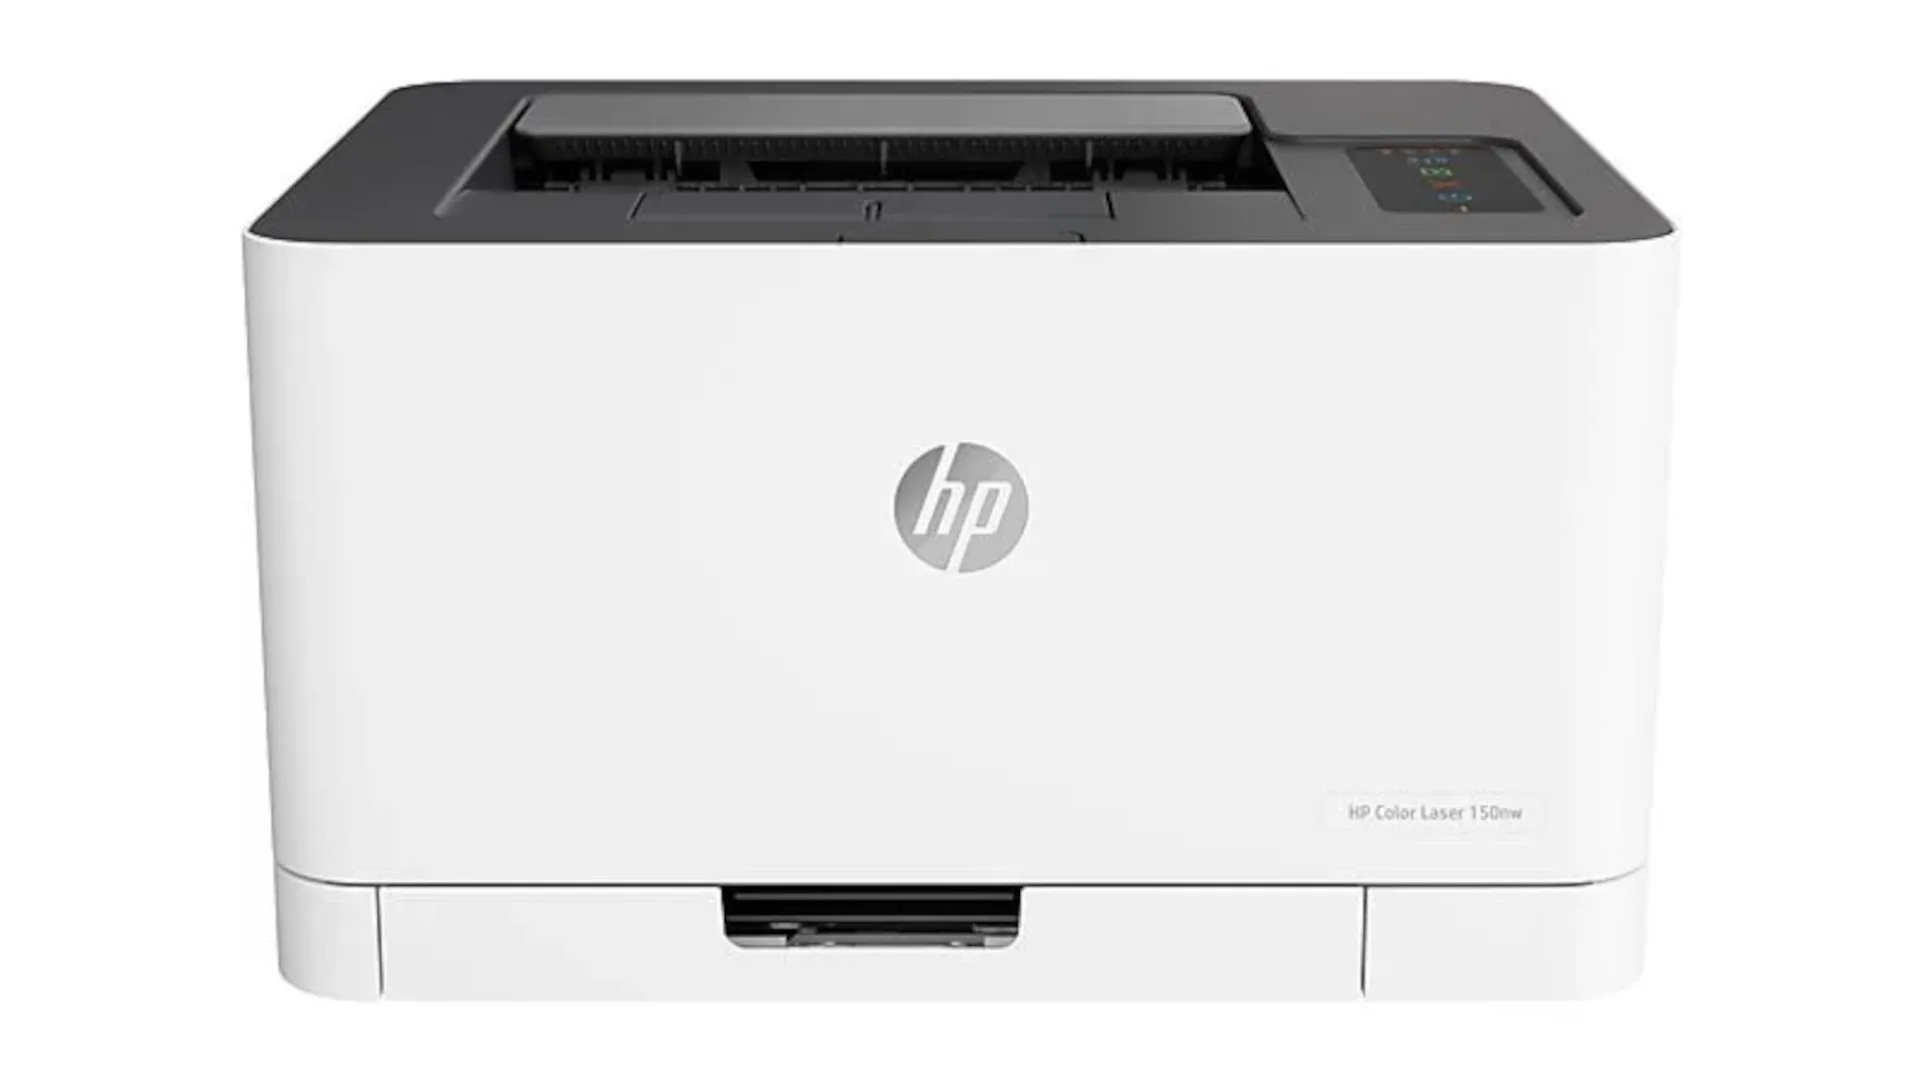 1835926 HP Laser printer kleur 150 nw (4ZB95A)